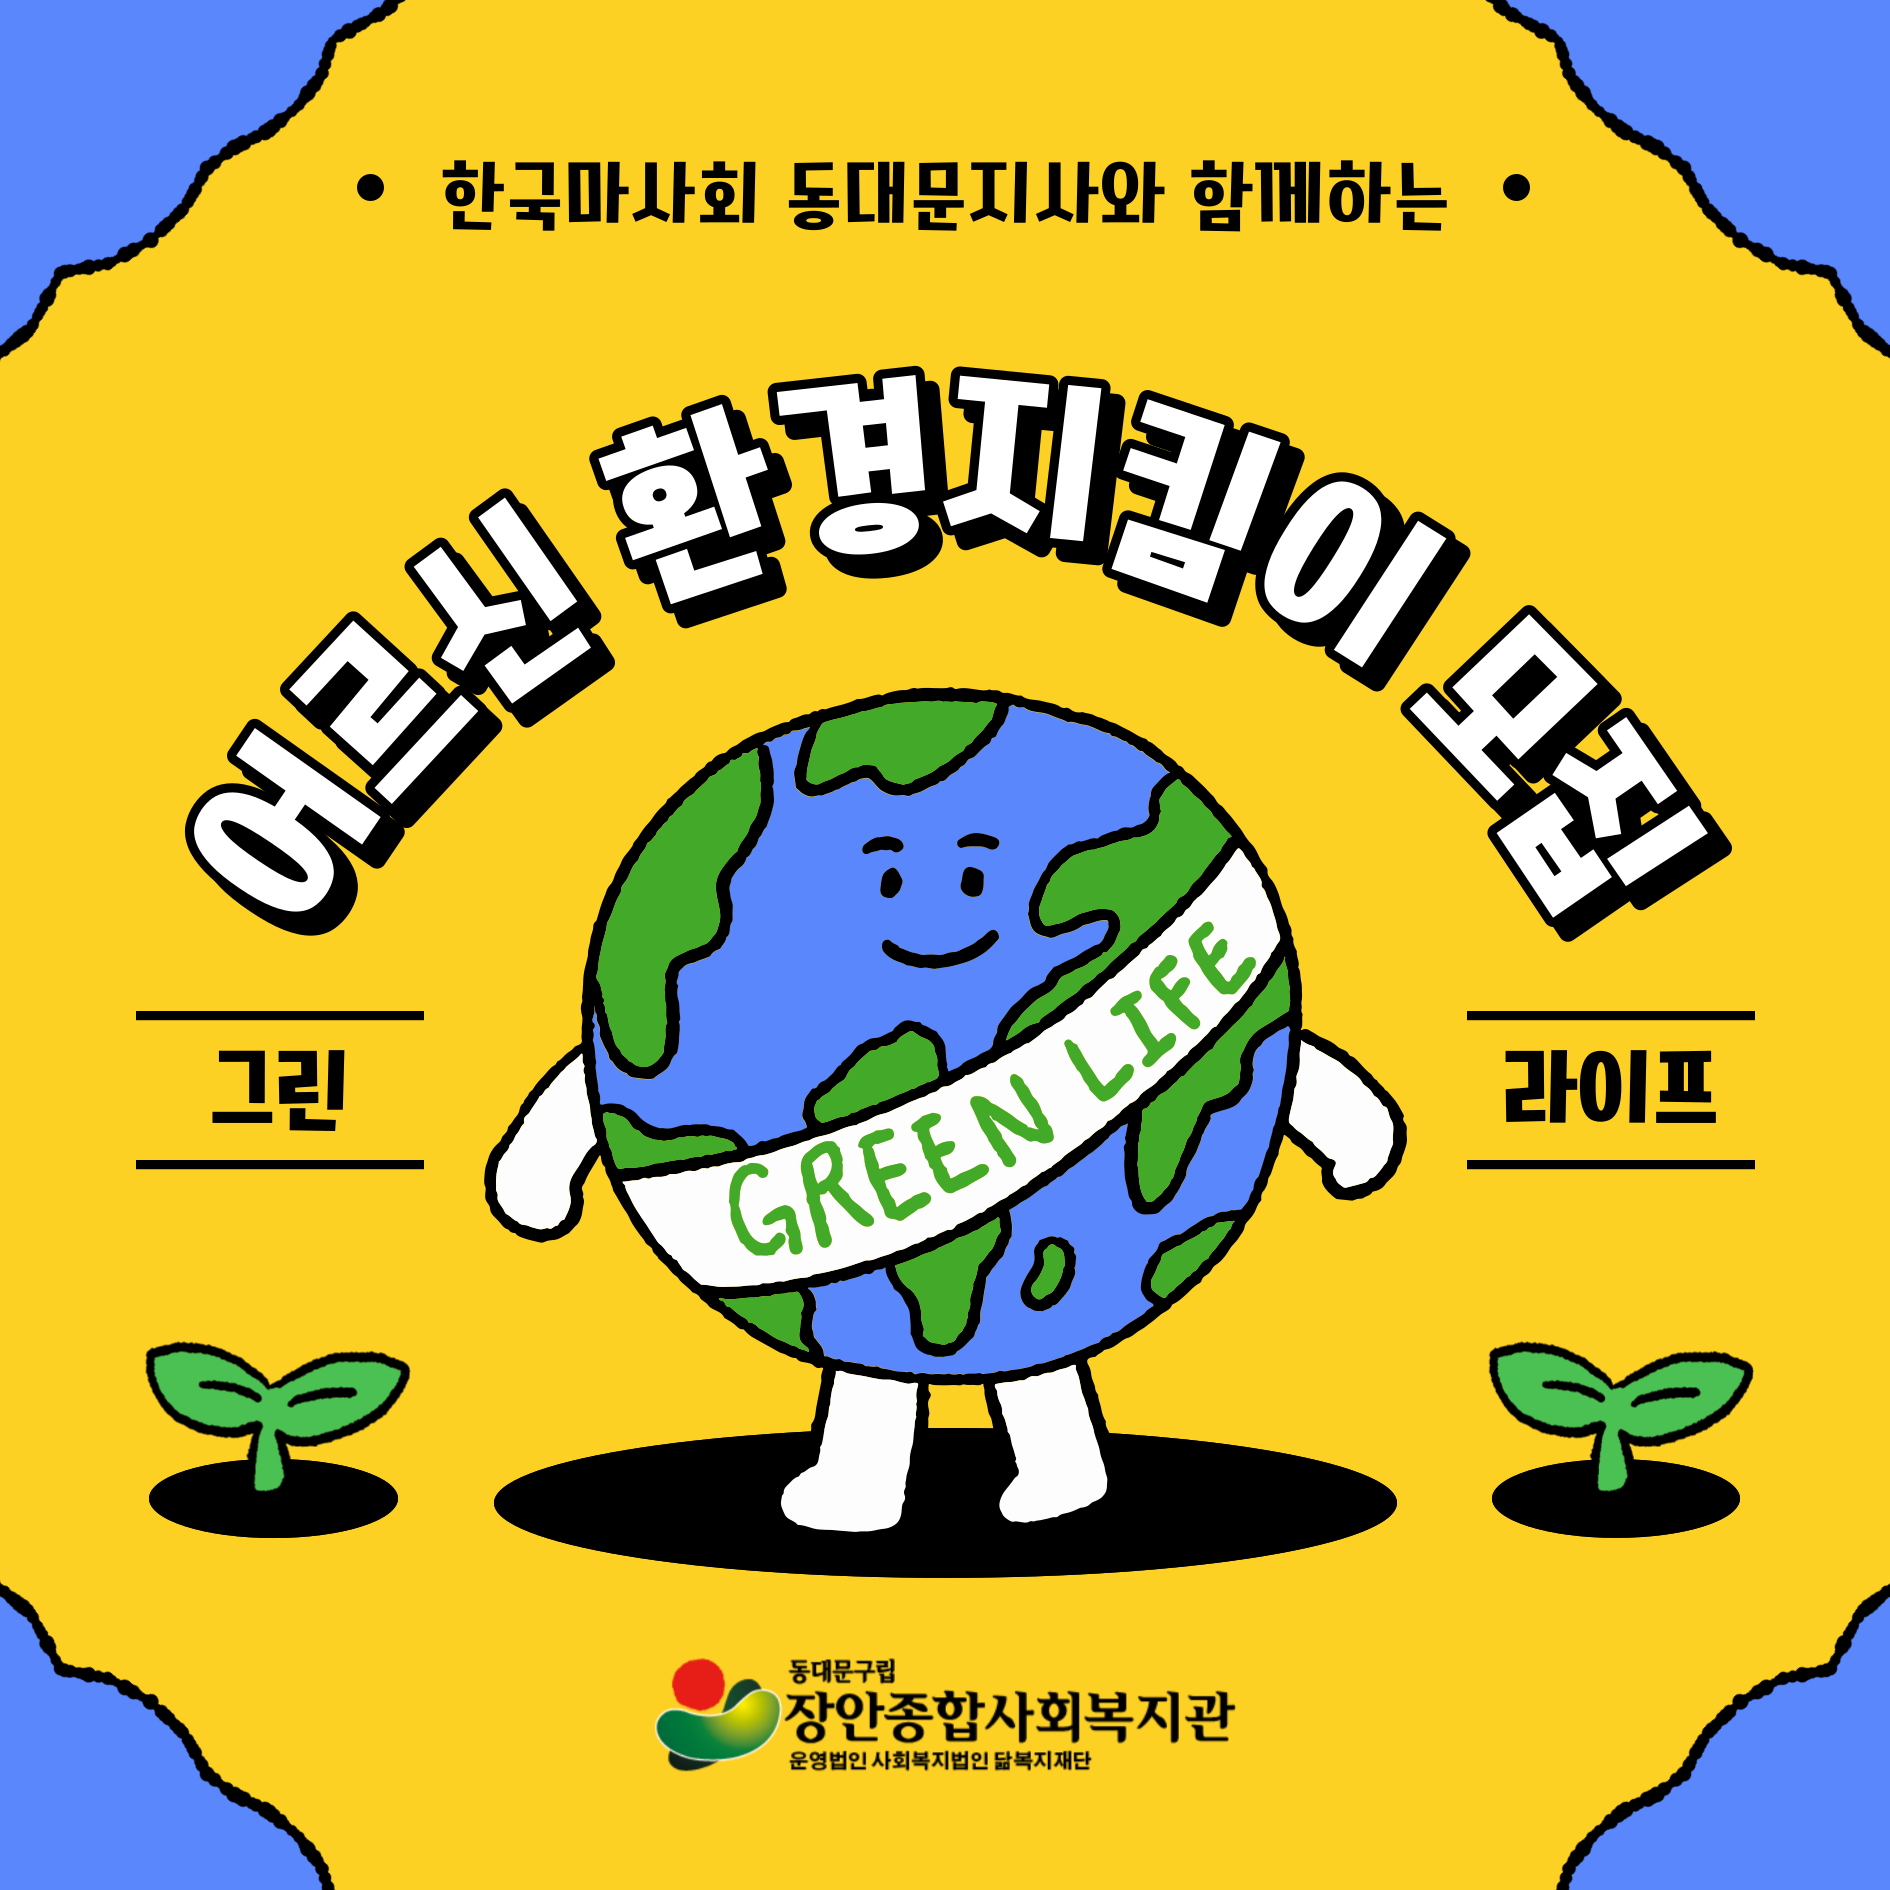 한국마사회 동대문지사와 함께하는 어르신 환경지킴이 모집 그린라이프 